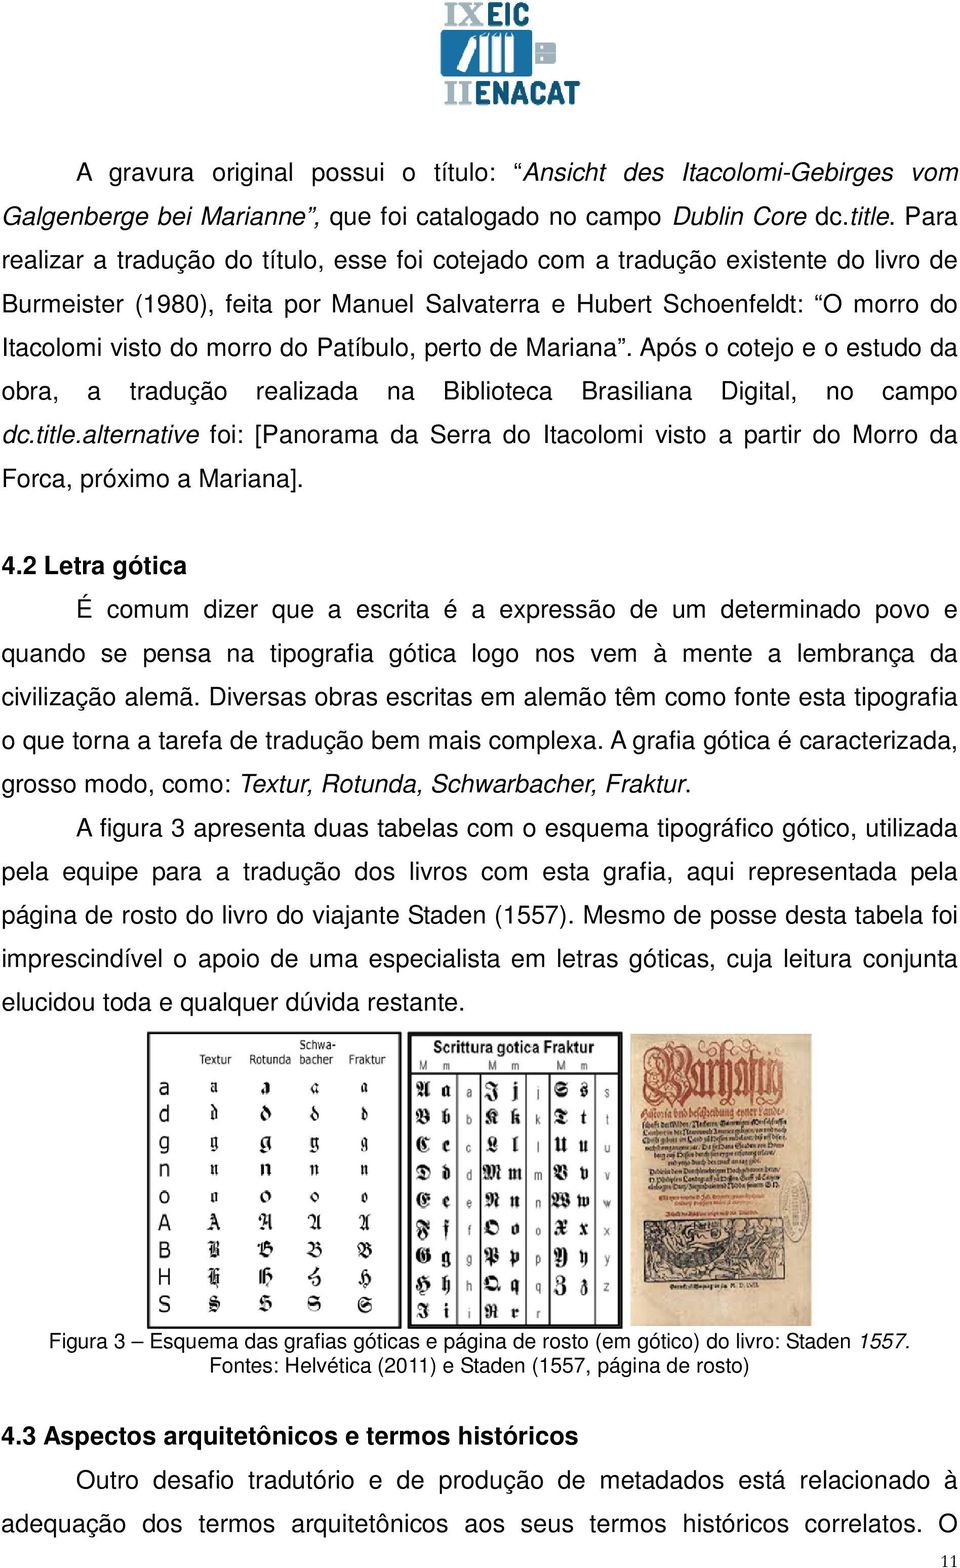 Patíbulo, perto de Mariana. Após o cotejo e o estudo da obra, a tradução realizada na Biblioteca Brasiliana Digital, no campo dc.title.